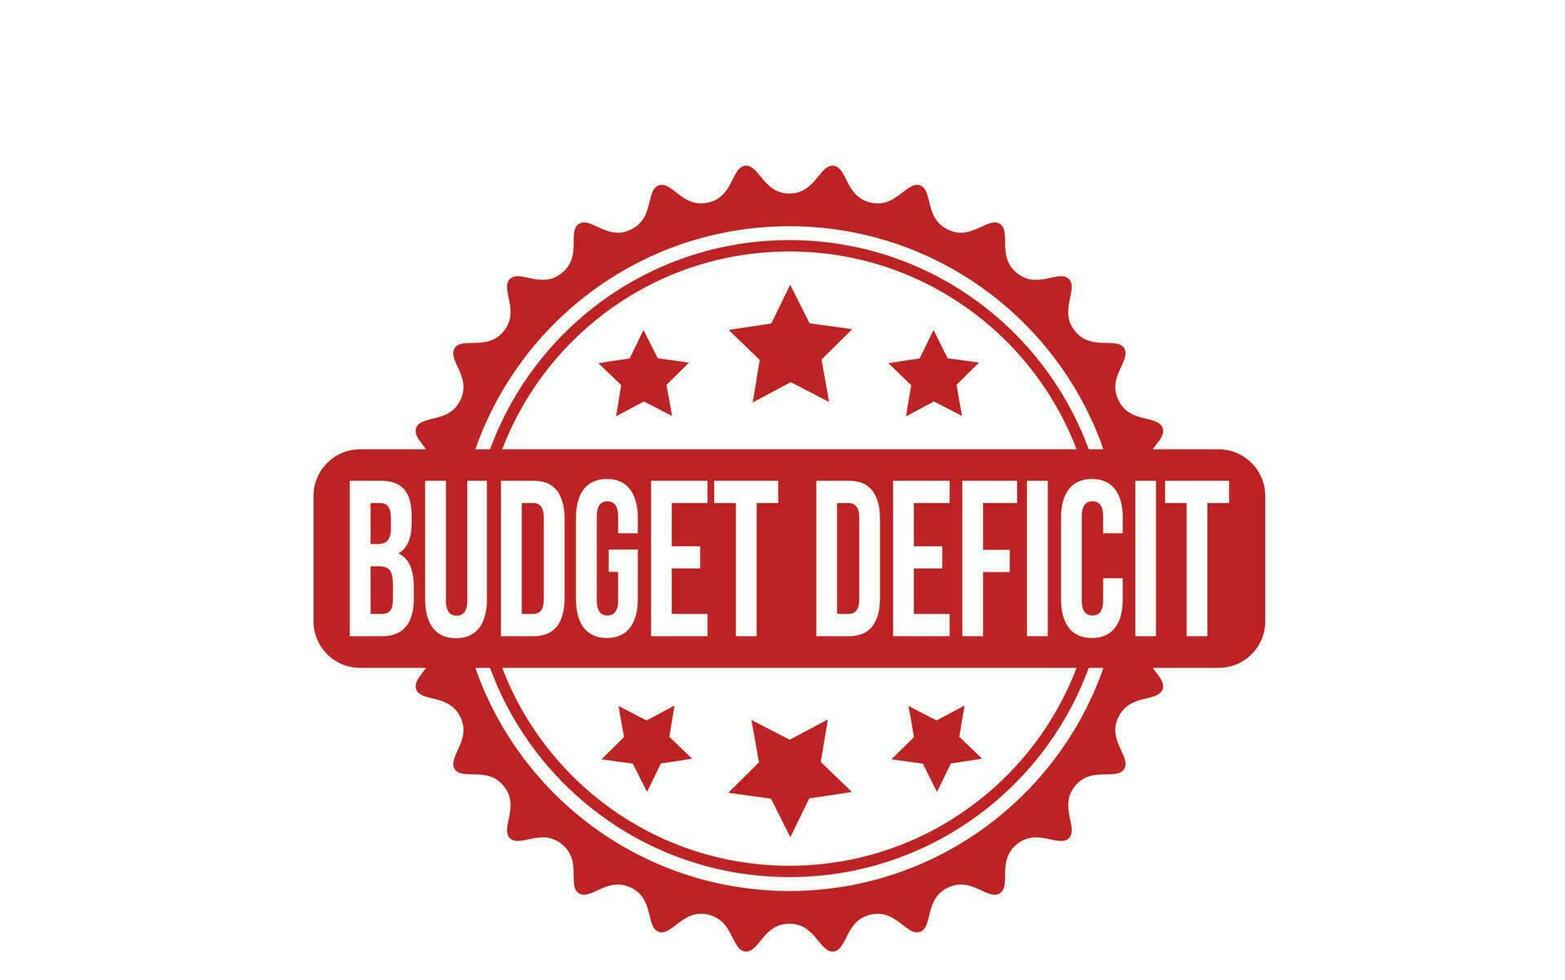 budget déficit caoutchouc timbre joint vecteur